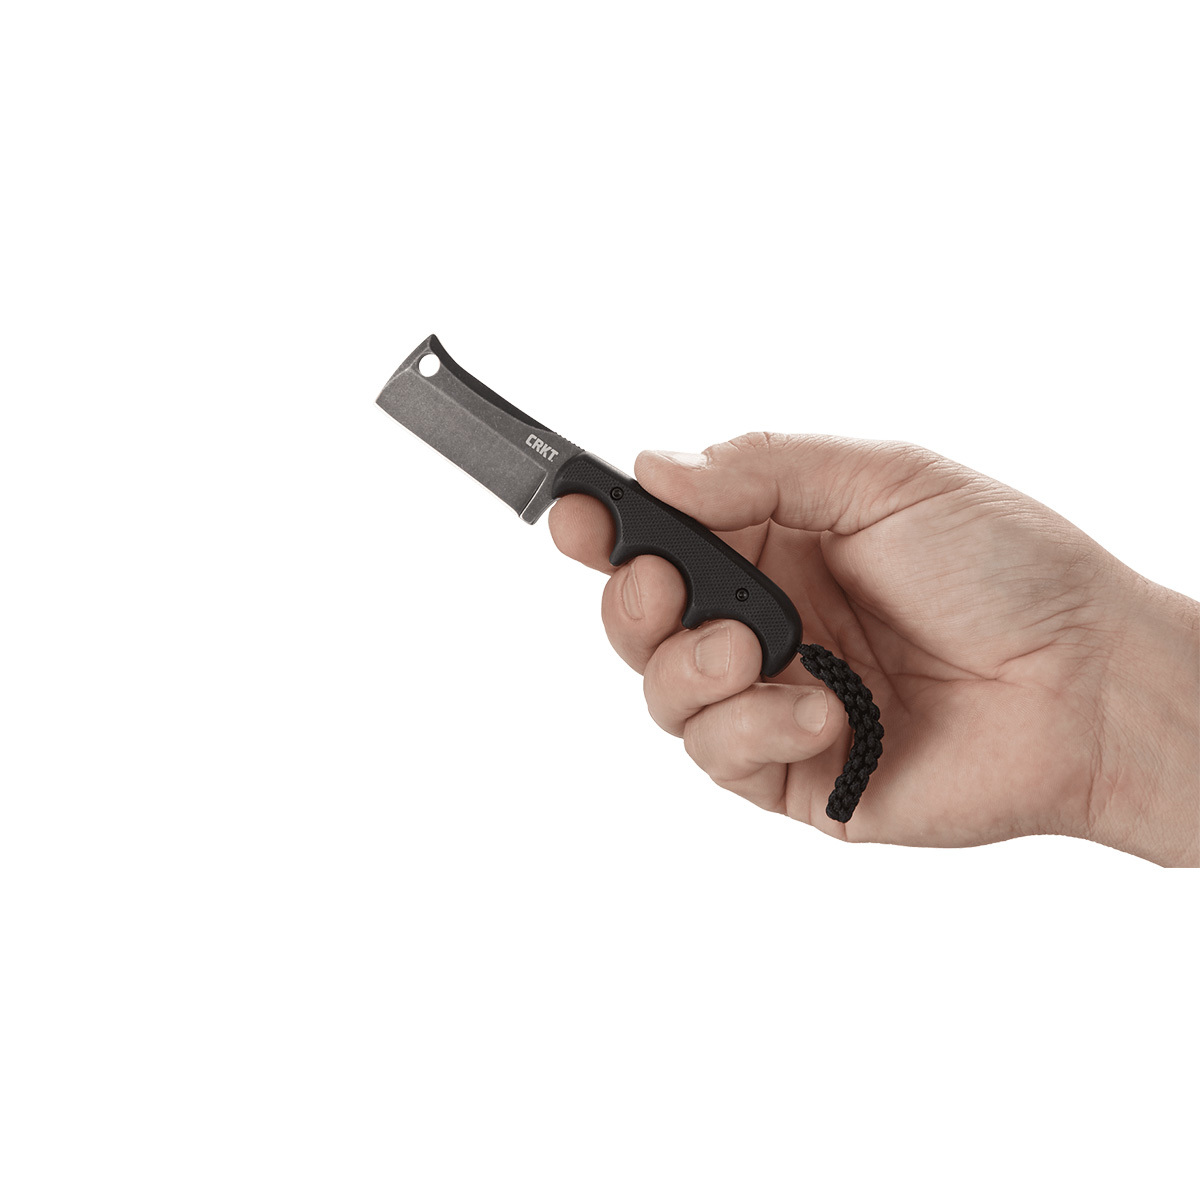 фото Шейный нож с фиксированным клинком crkt minimalist cleaver blackout, сталь 5cr15mov, рукоять g10